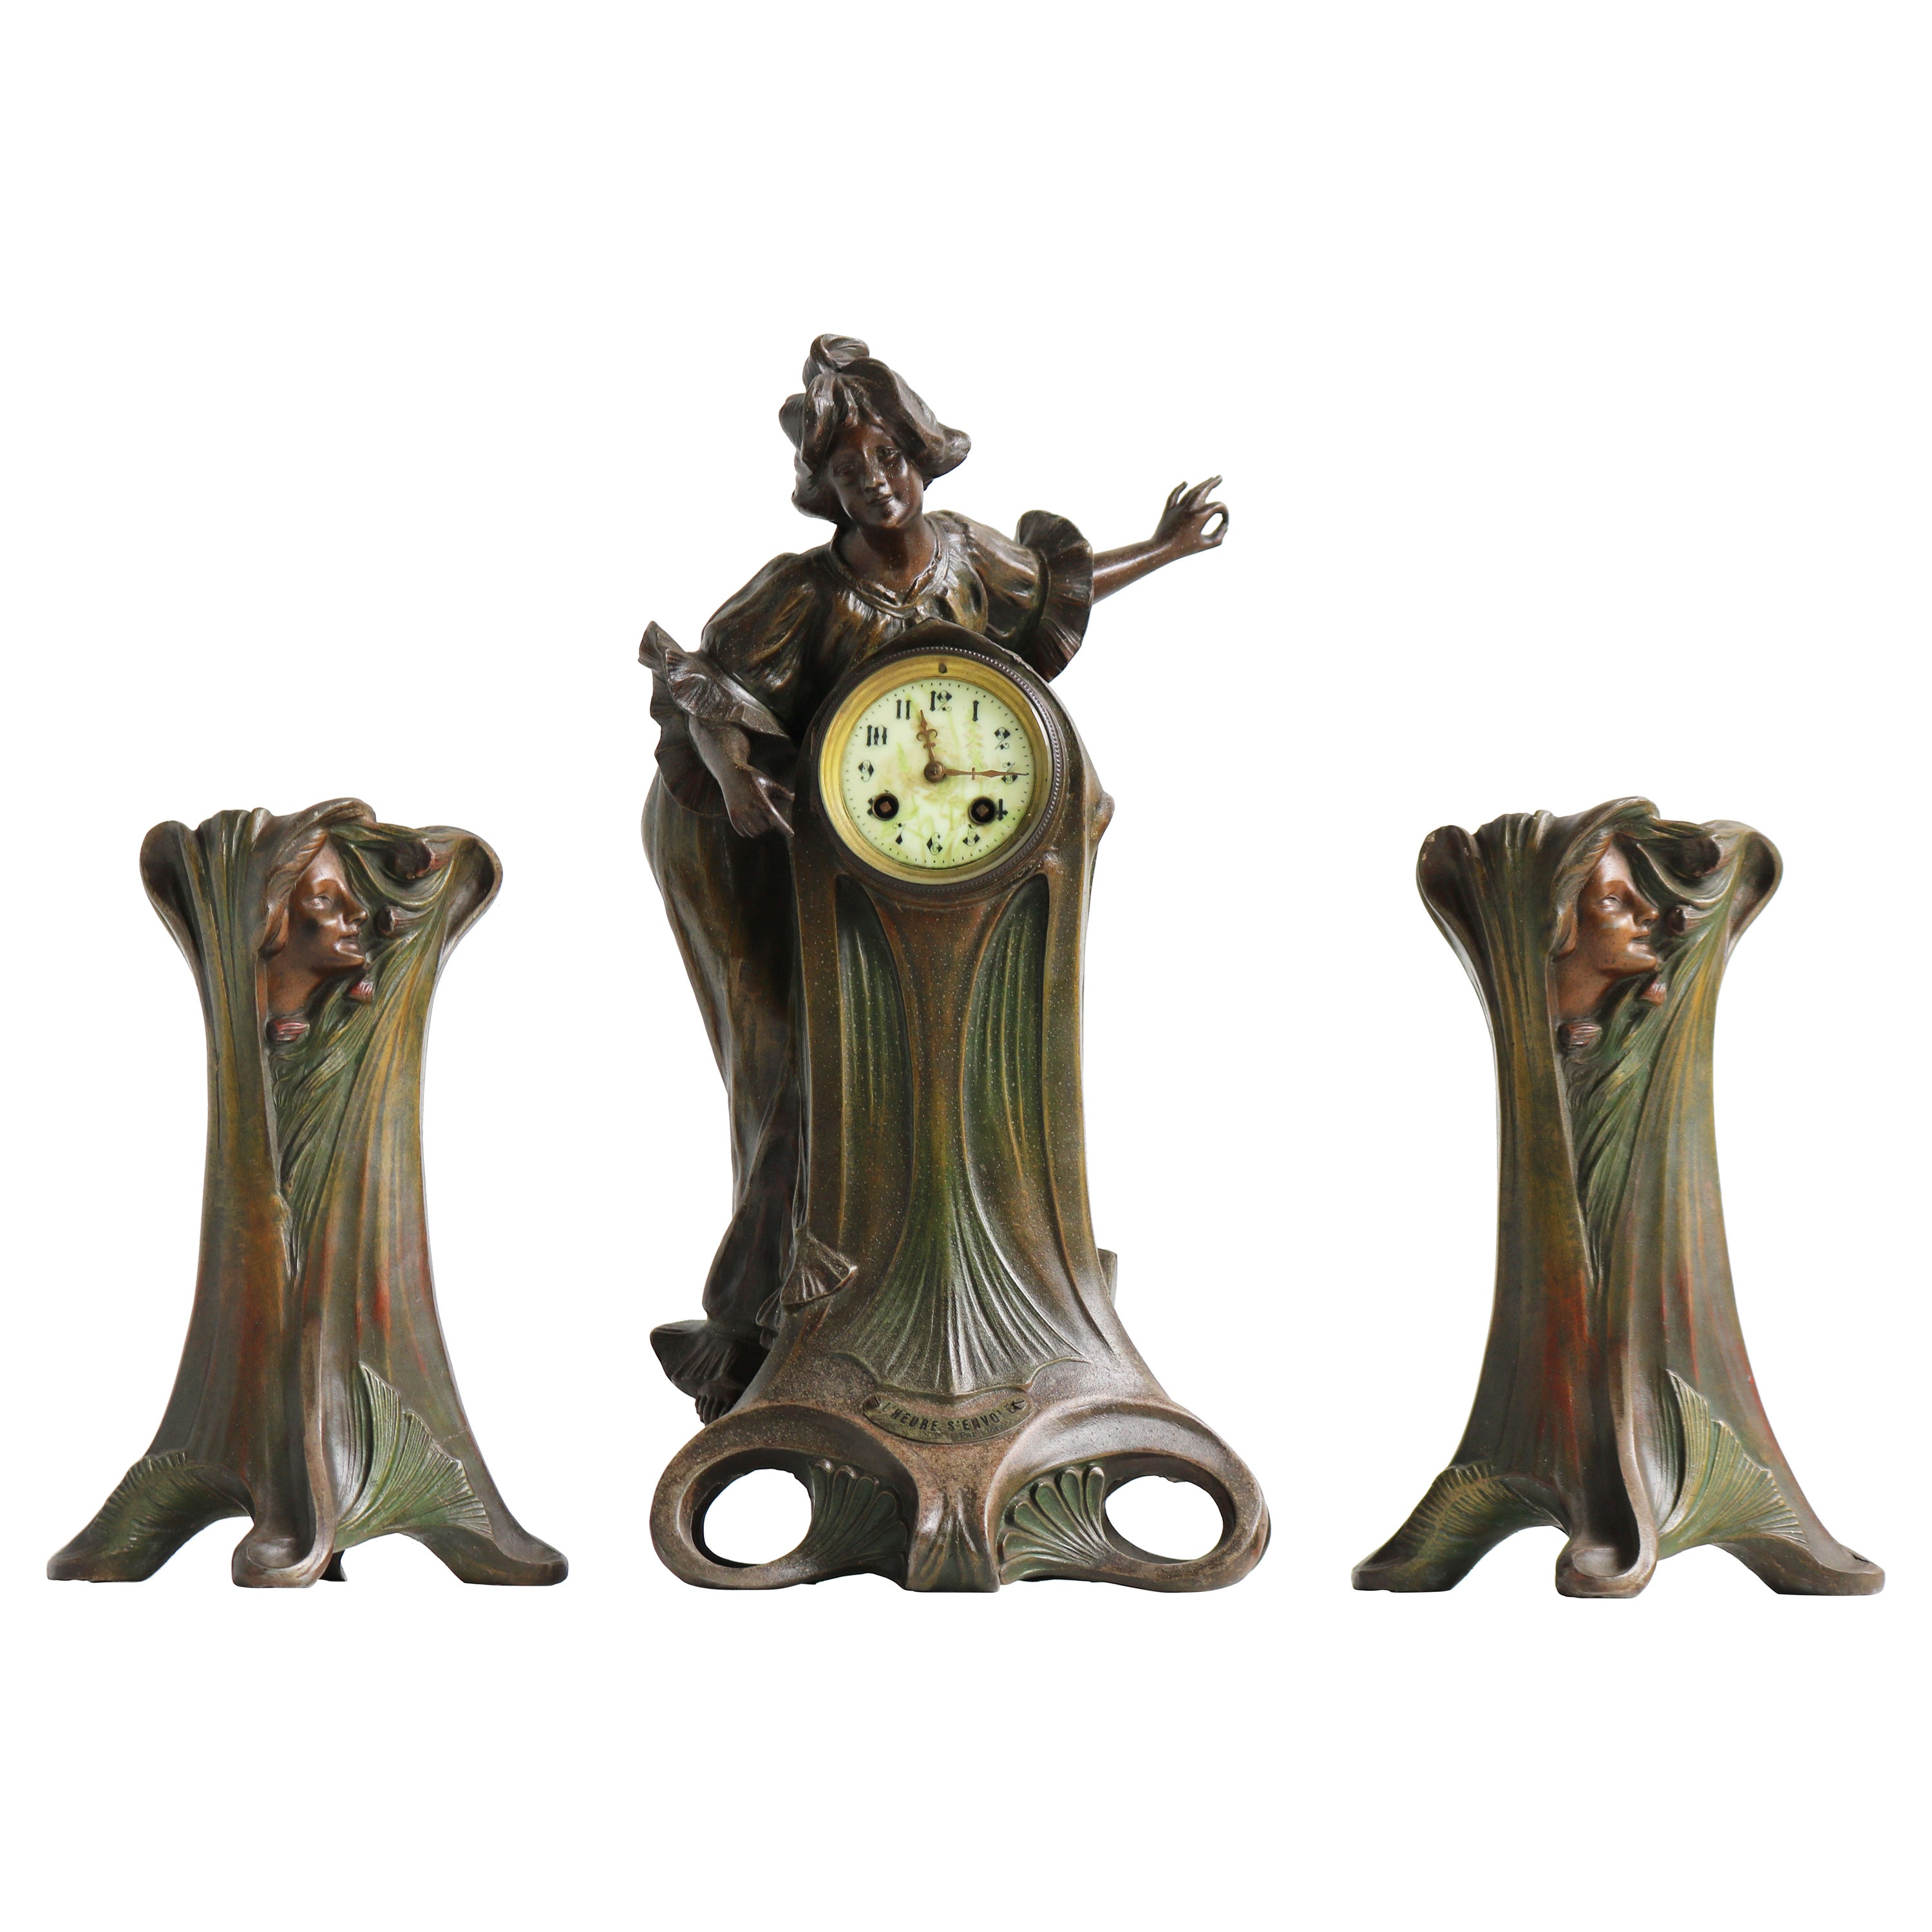 Art Nouveau Clock Set by Francesco Flora 1890 Antique Three Piece French Mantel